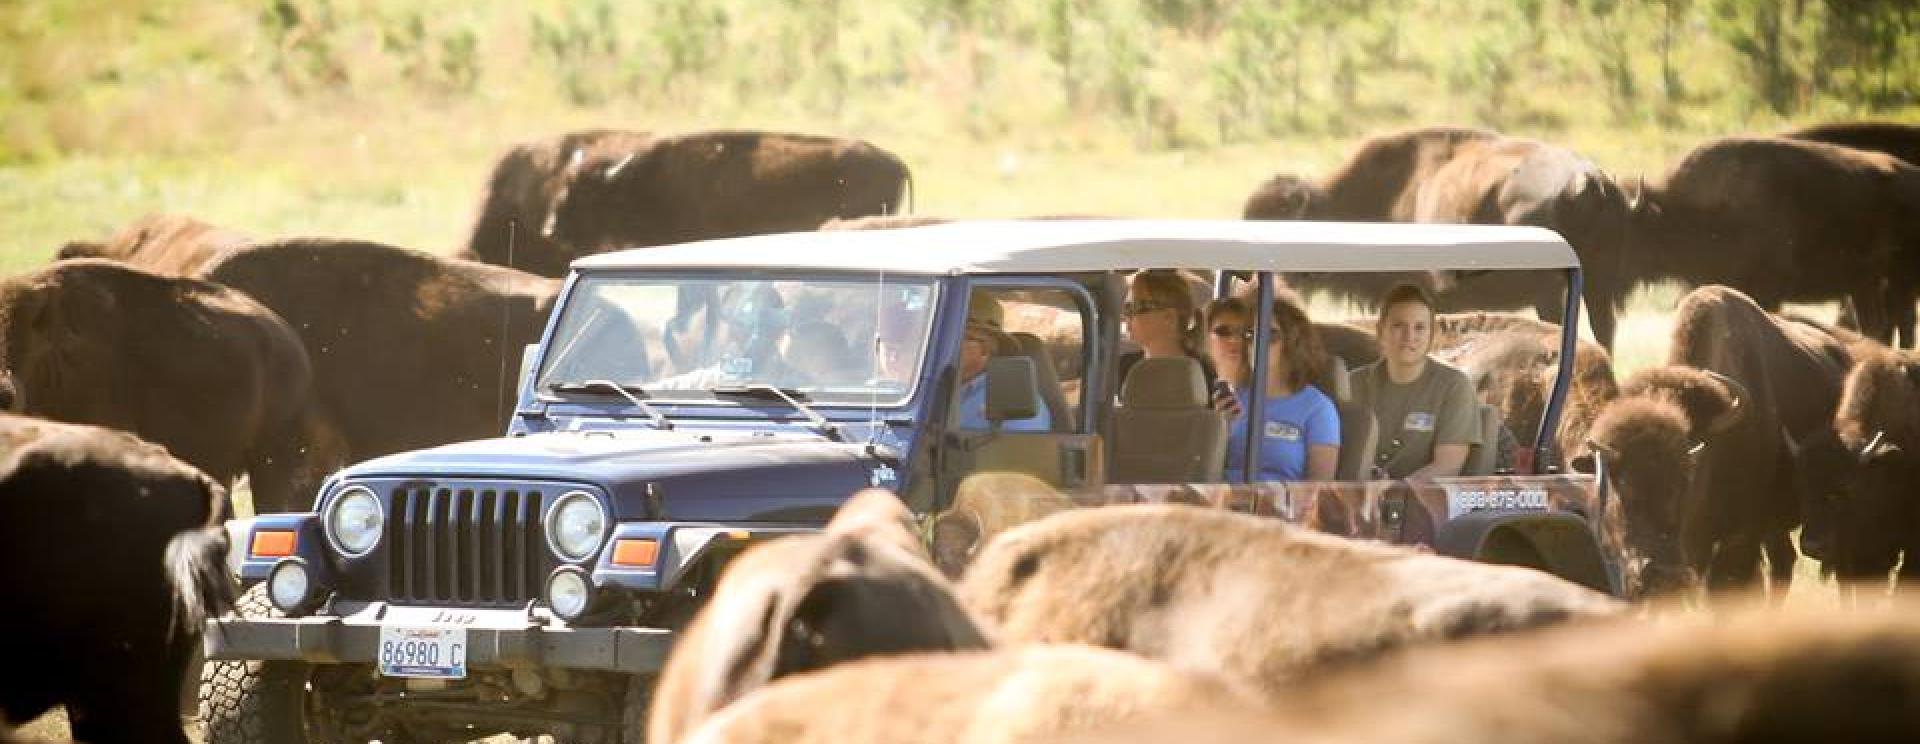 Buffalo Safari Jeep Tours